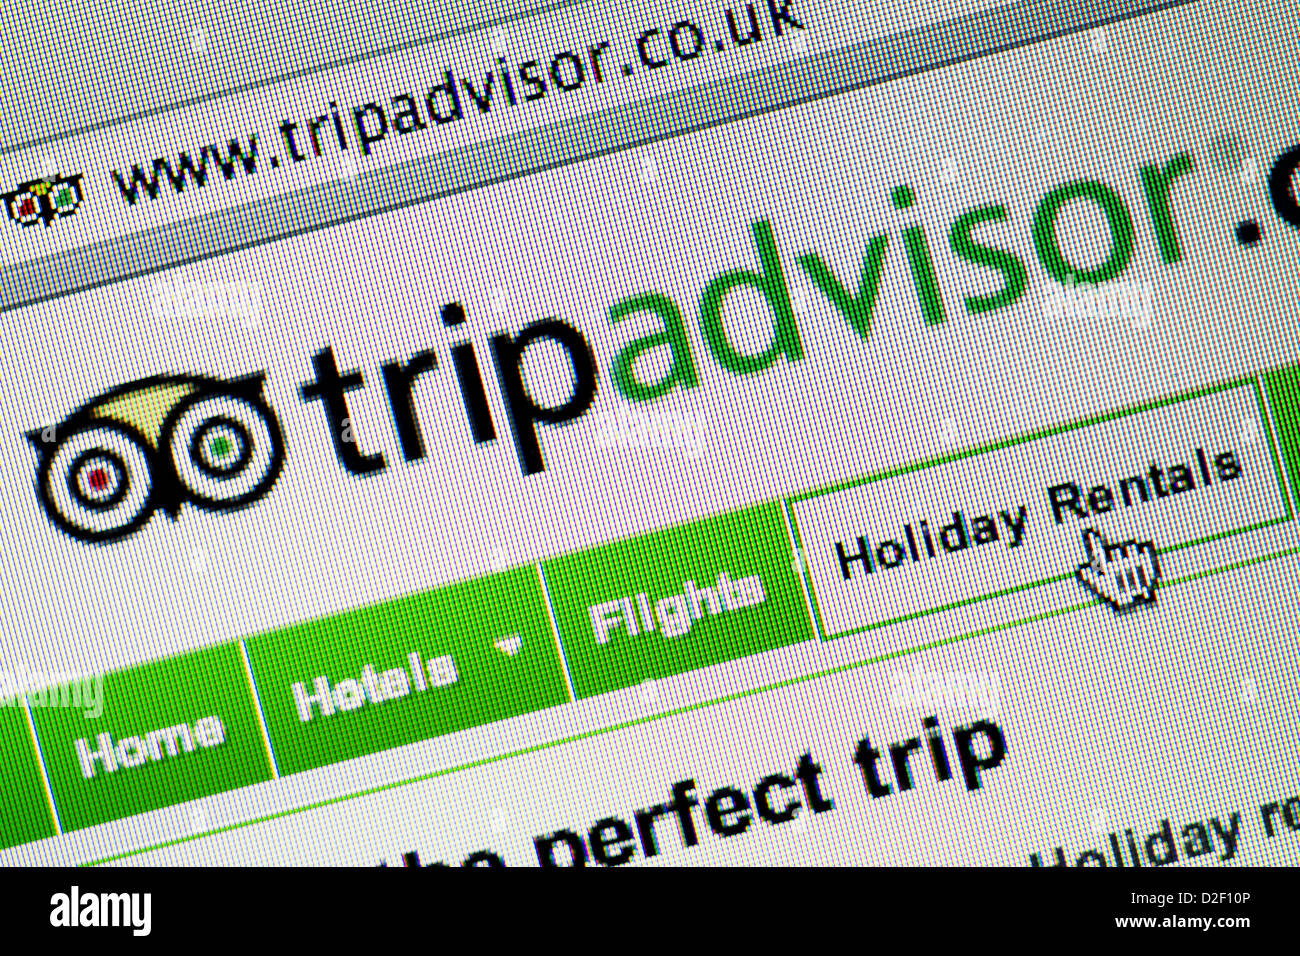 Trip Advisor logo and website close up. Stock Photo